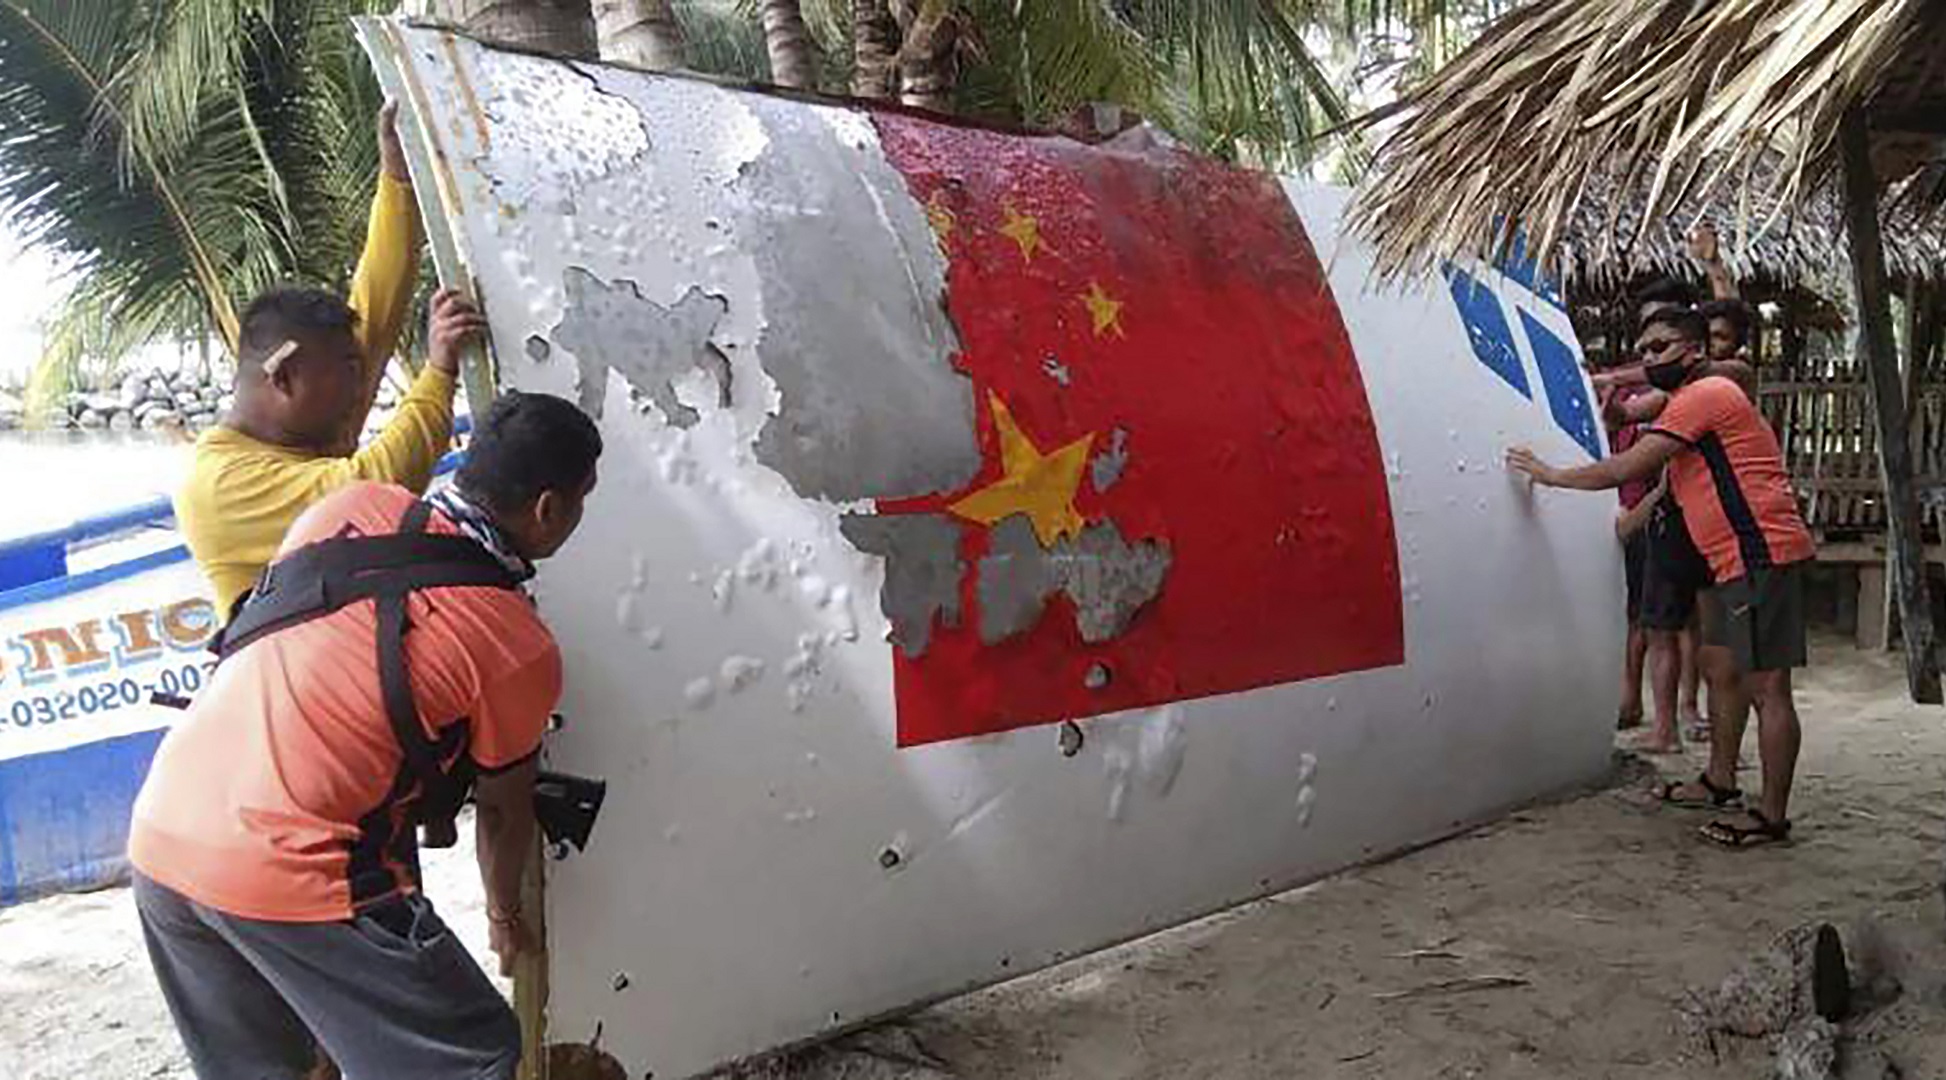 Restos de un cohete chino, encontrado en el mar (Guardia Costera/AP)/archivo)